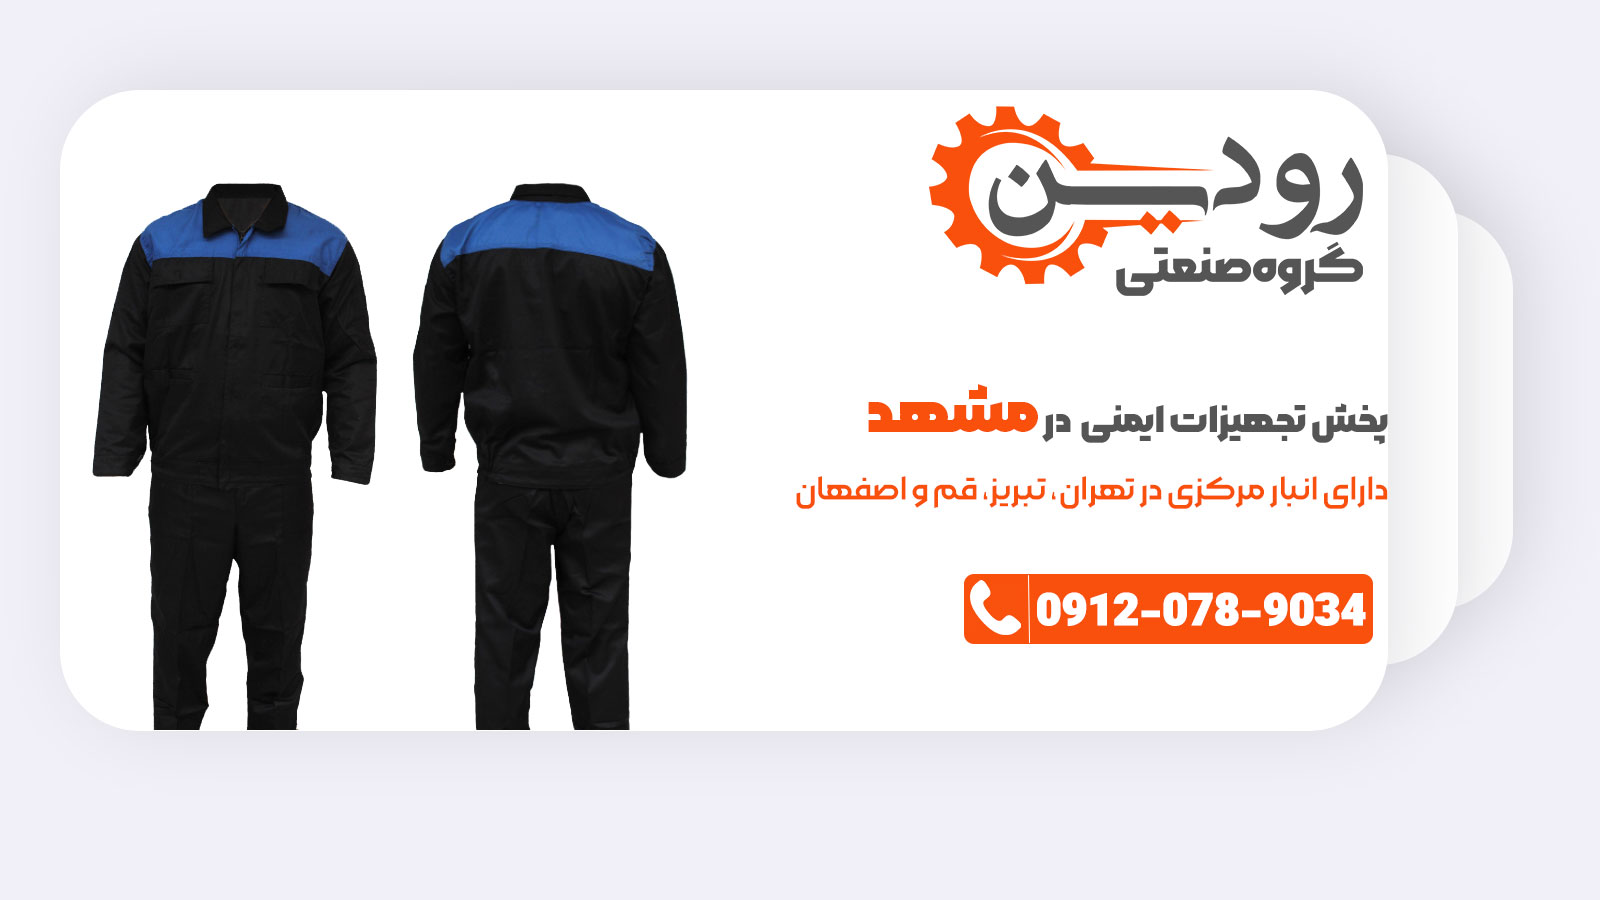 بزرگترین فروشگاه لوازم ایمنی در مشهد افتتاح گردید. بشتابید و قیمت ارزان خرید کنید.